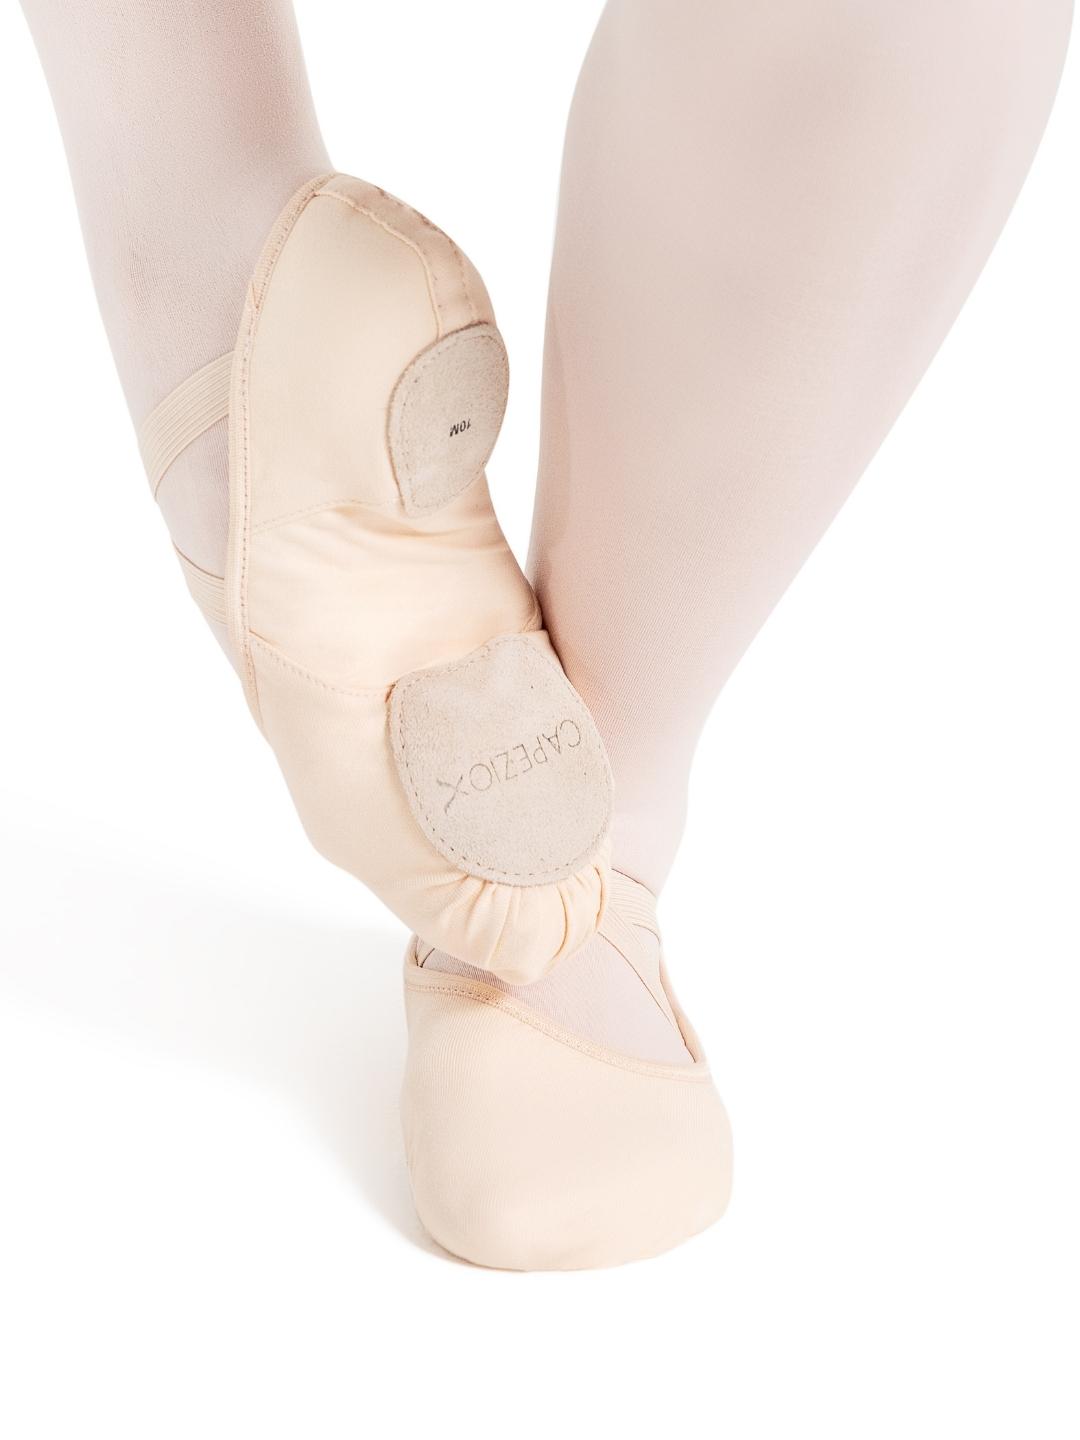 Hanami Canvas Split-Sole Ballet Shoes - Adult - Light Pink